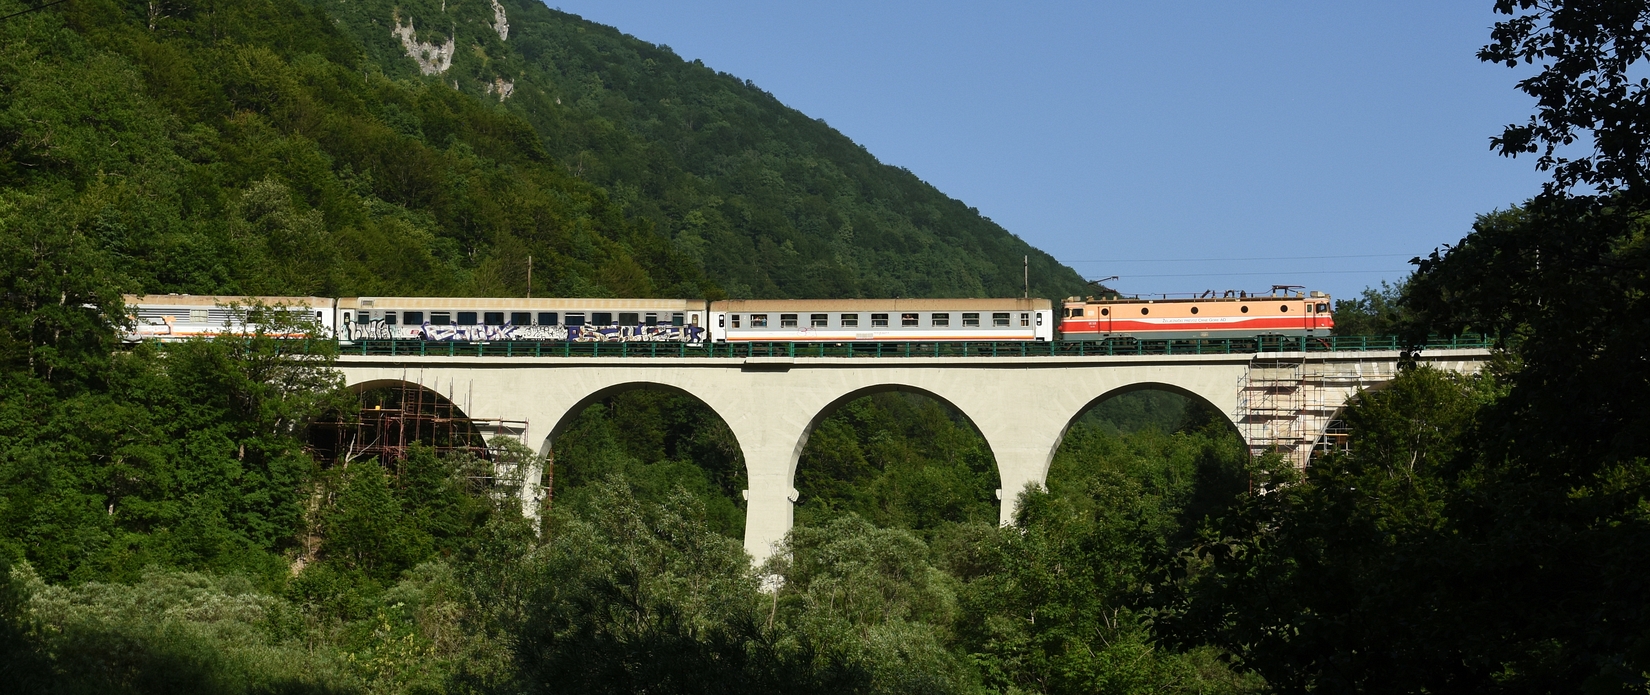 Brücken, Felsen, Meer – Montenegro im Juni 2021